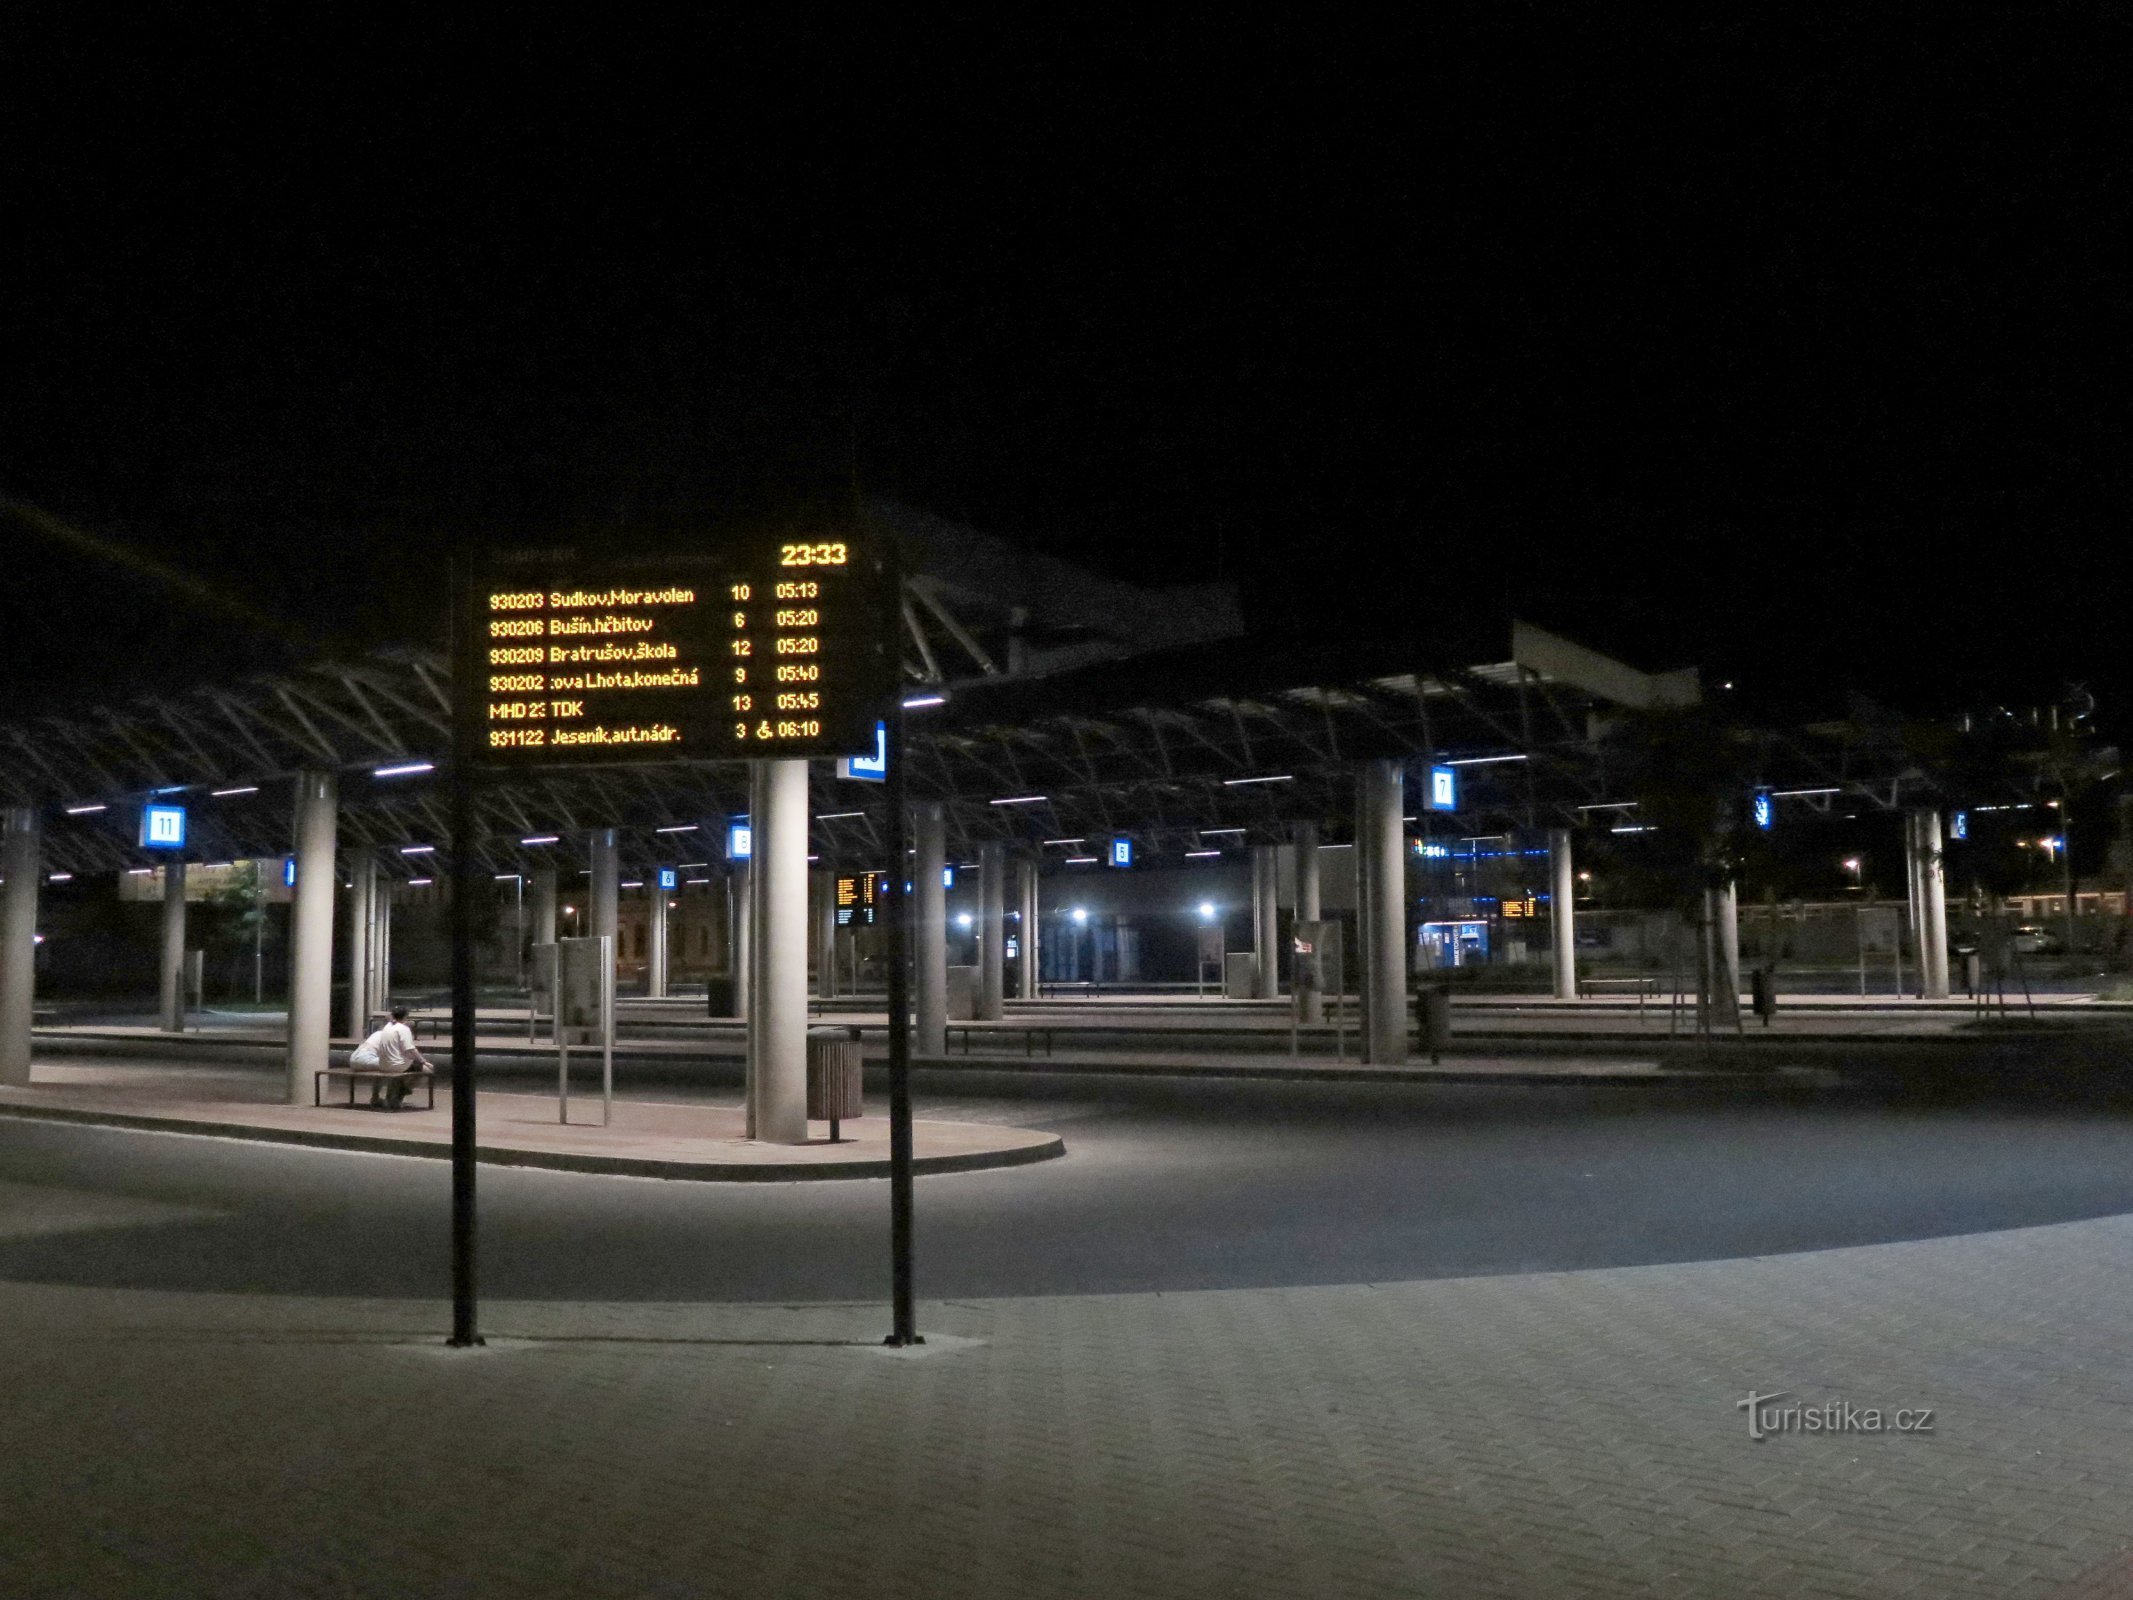 Šumperk – nova estação de ônibus